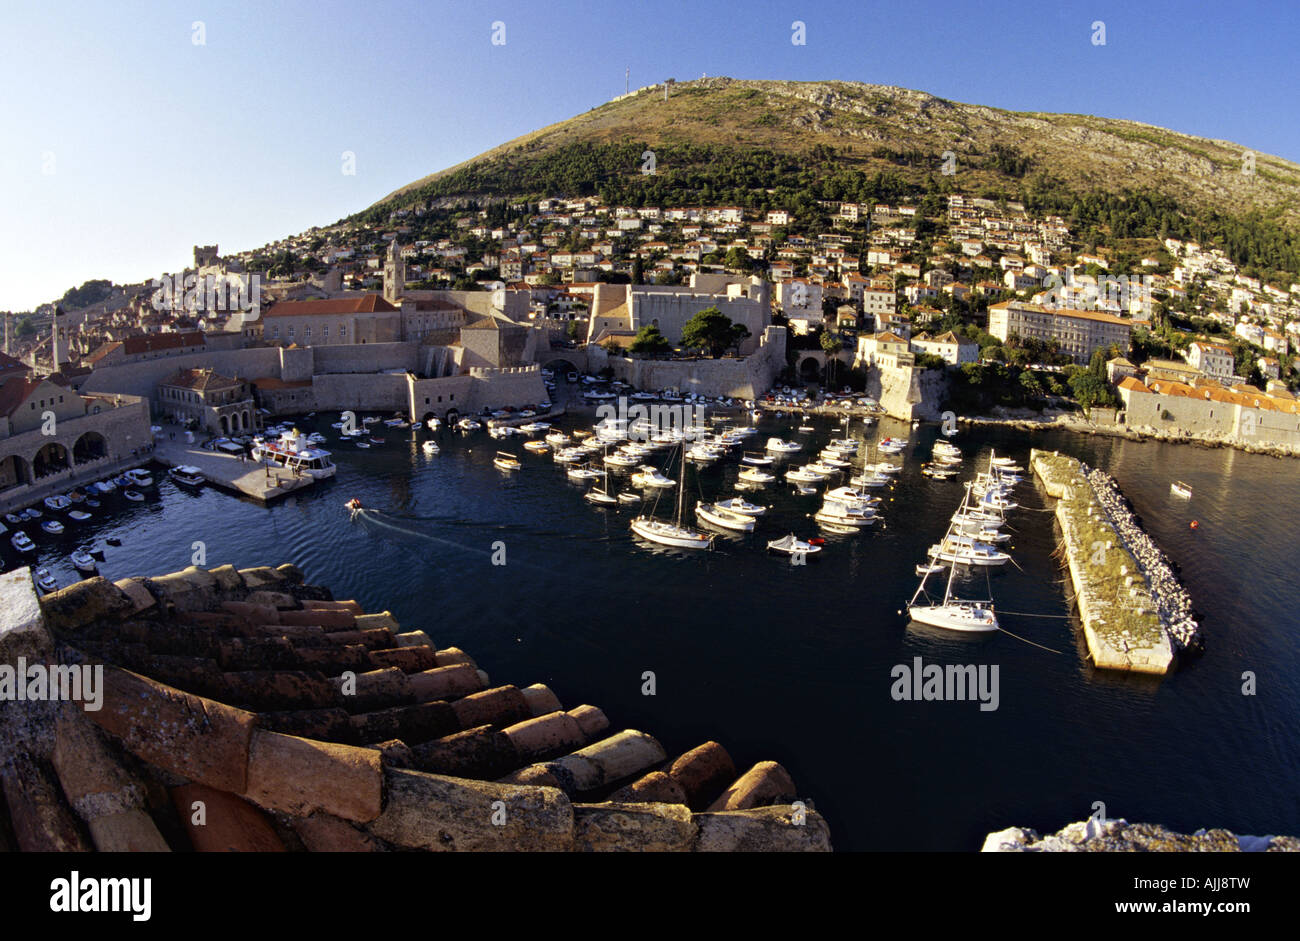 Kroatien Dalmatien Dubrovnik - Altstadt und Hafen von Dubrovnik | Croatia Dalmatia Dubrovnik - Old Town Center and harbour Stock Photo